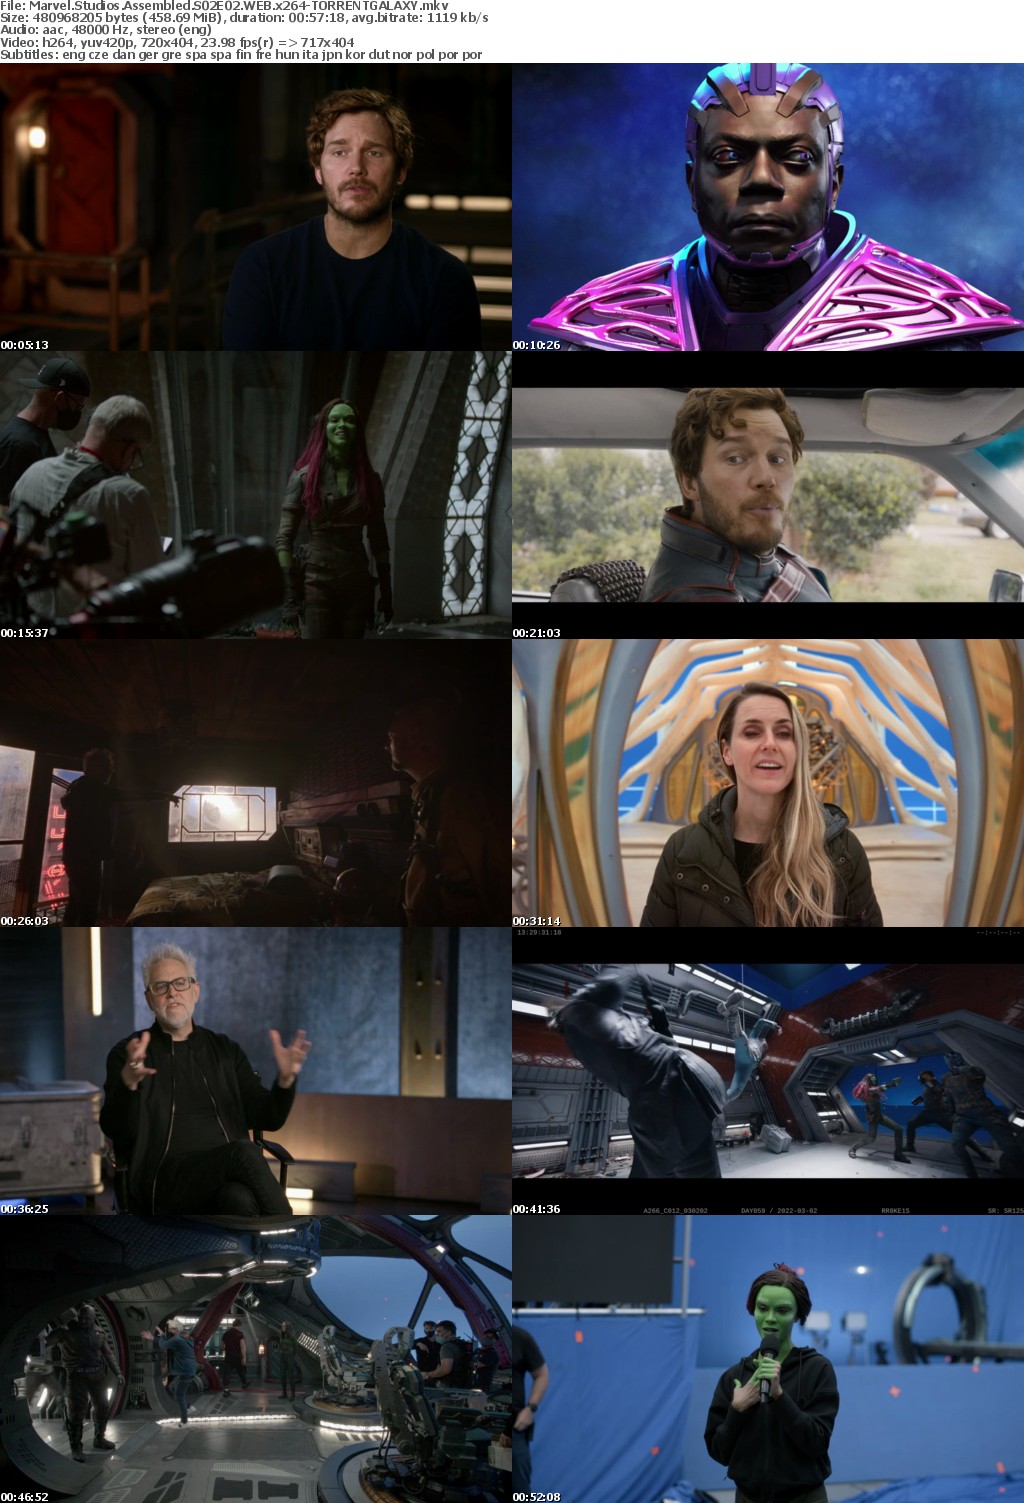 Marvel Studios Assembled S02E02 WEB x264-GALAXY